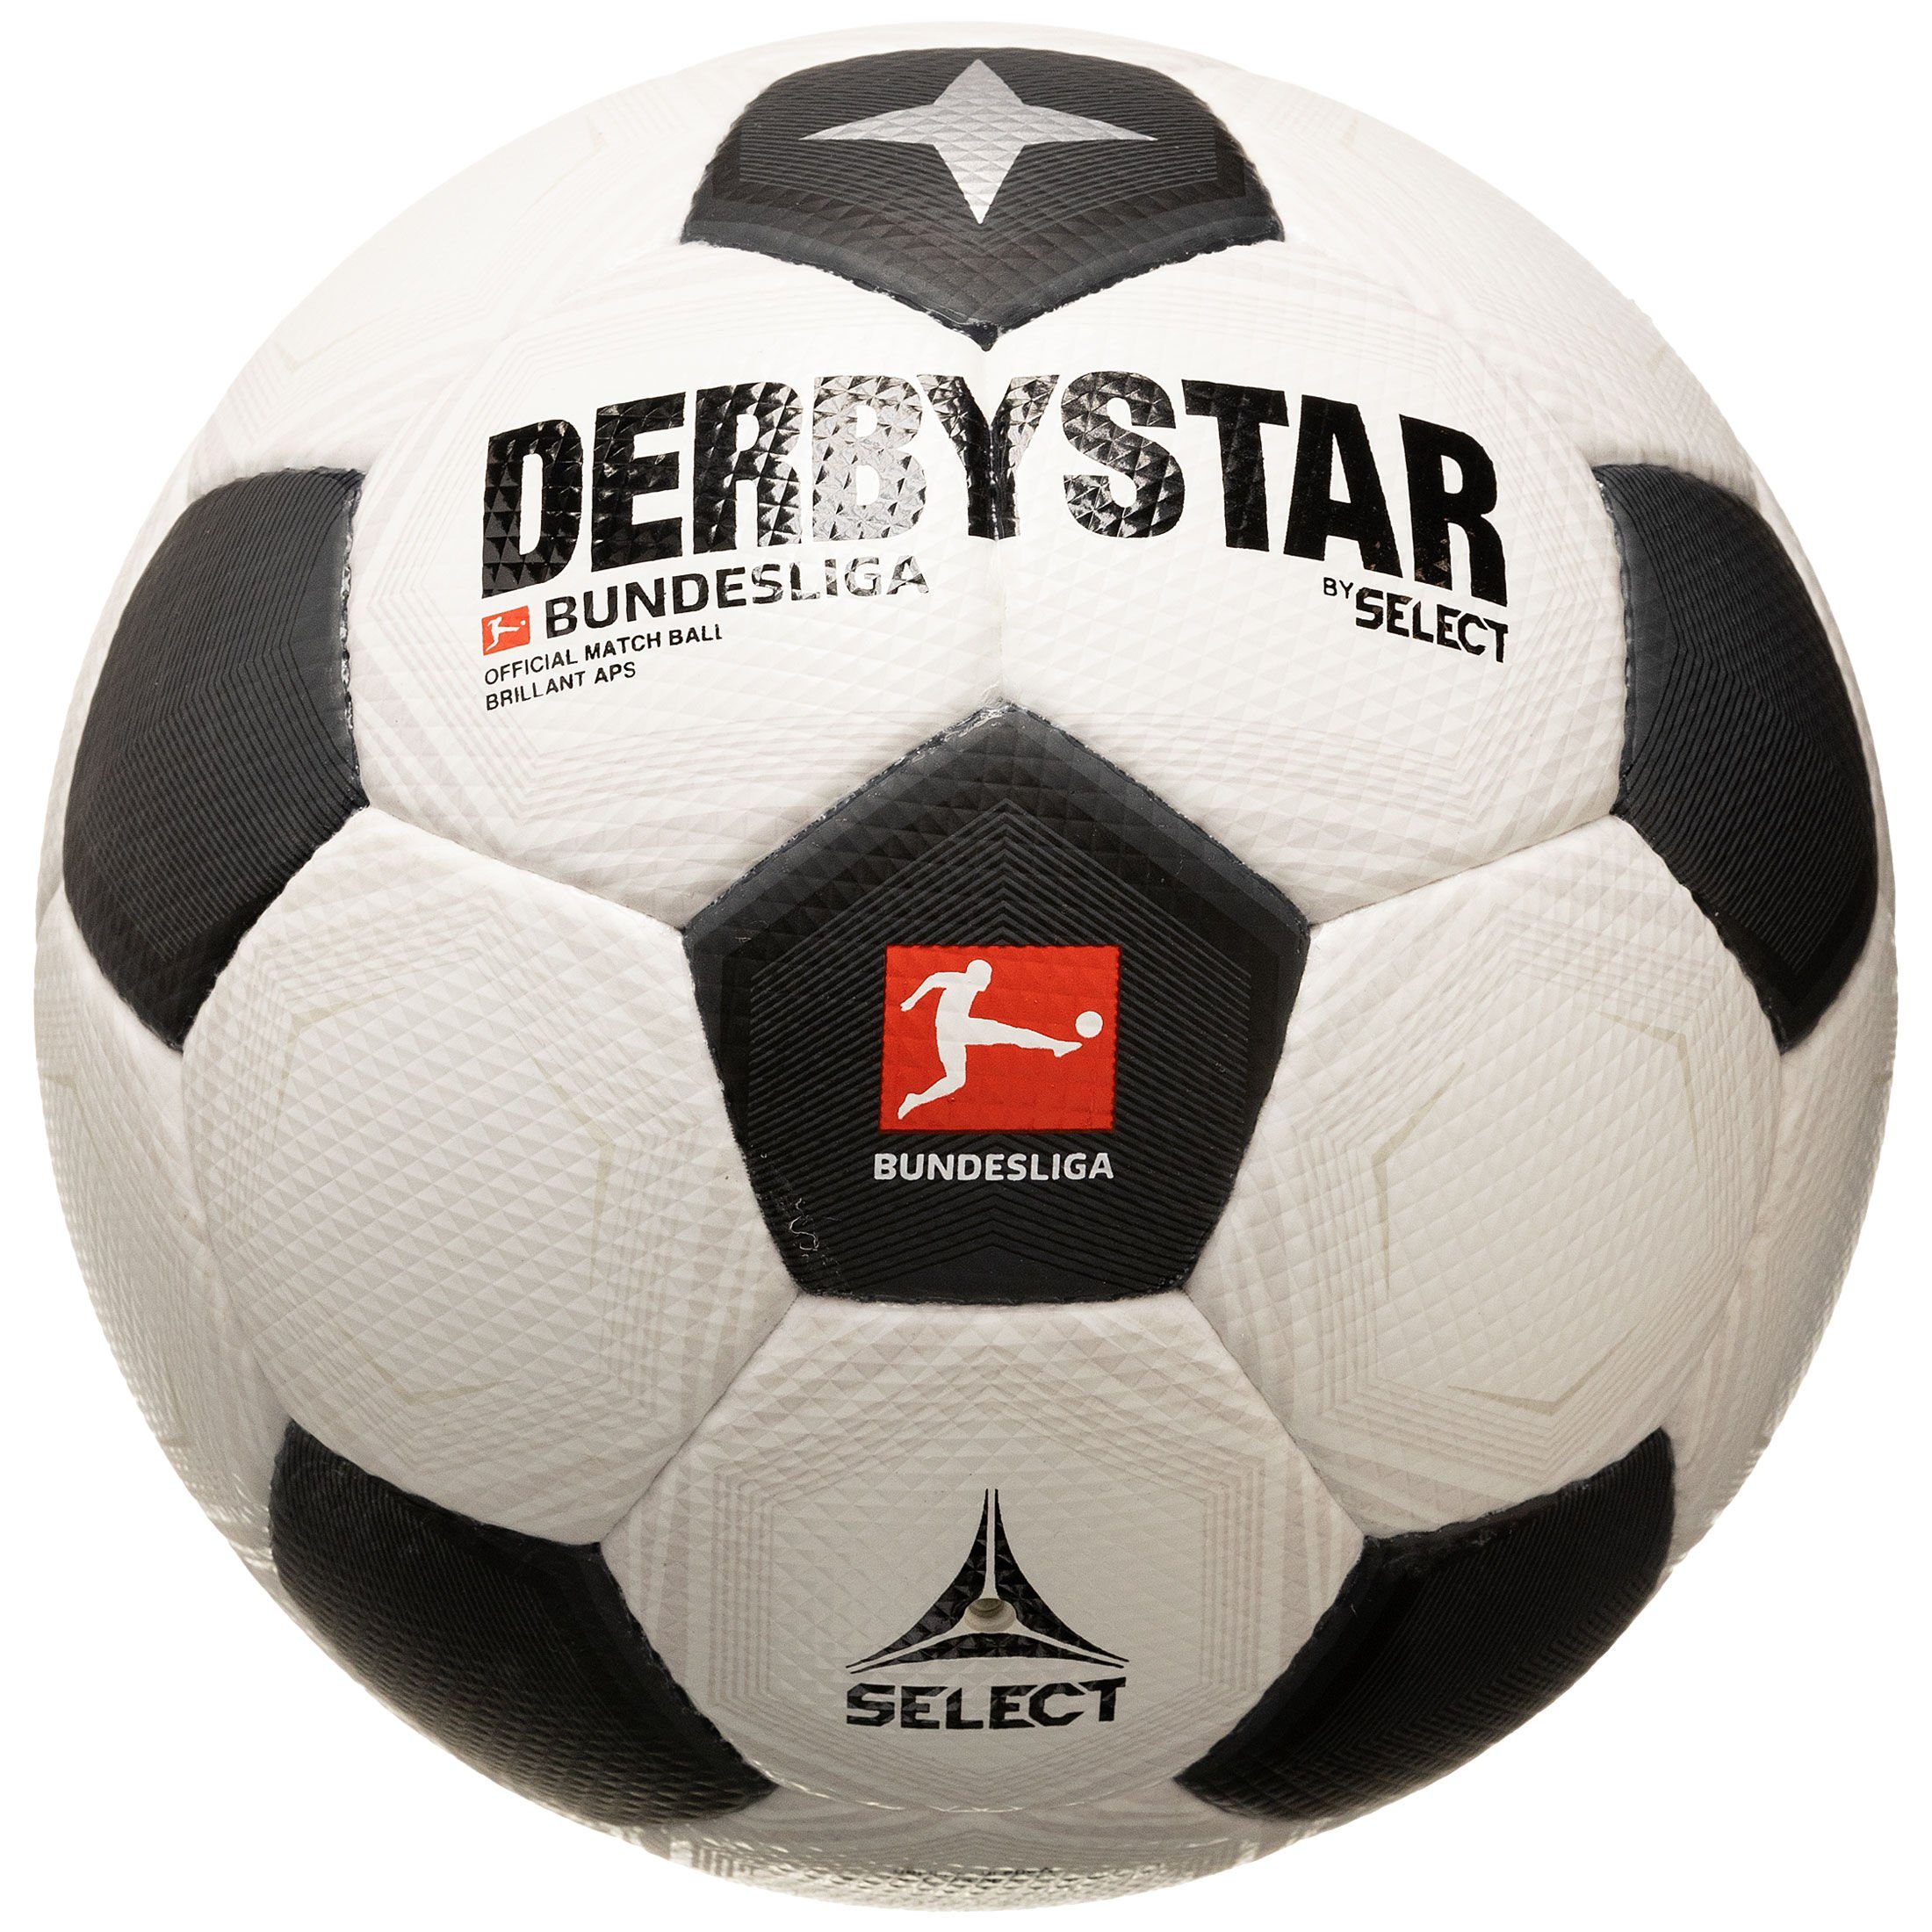 Derbystar Fußball Bundesliga v23 CLASSIC APS Fußball Brillant